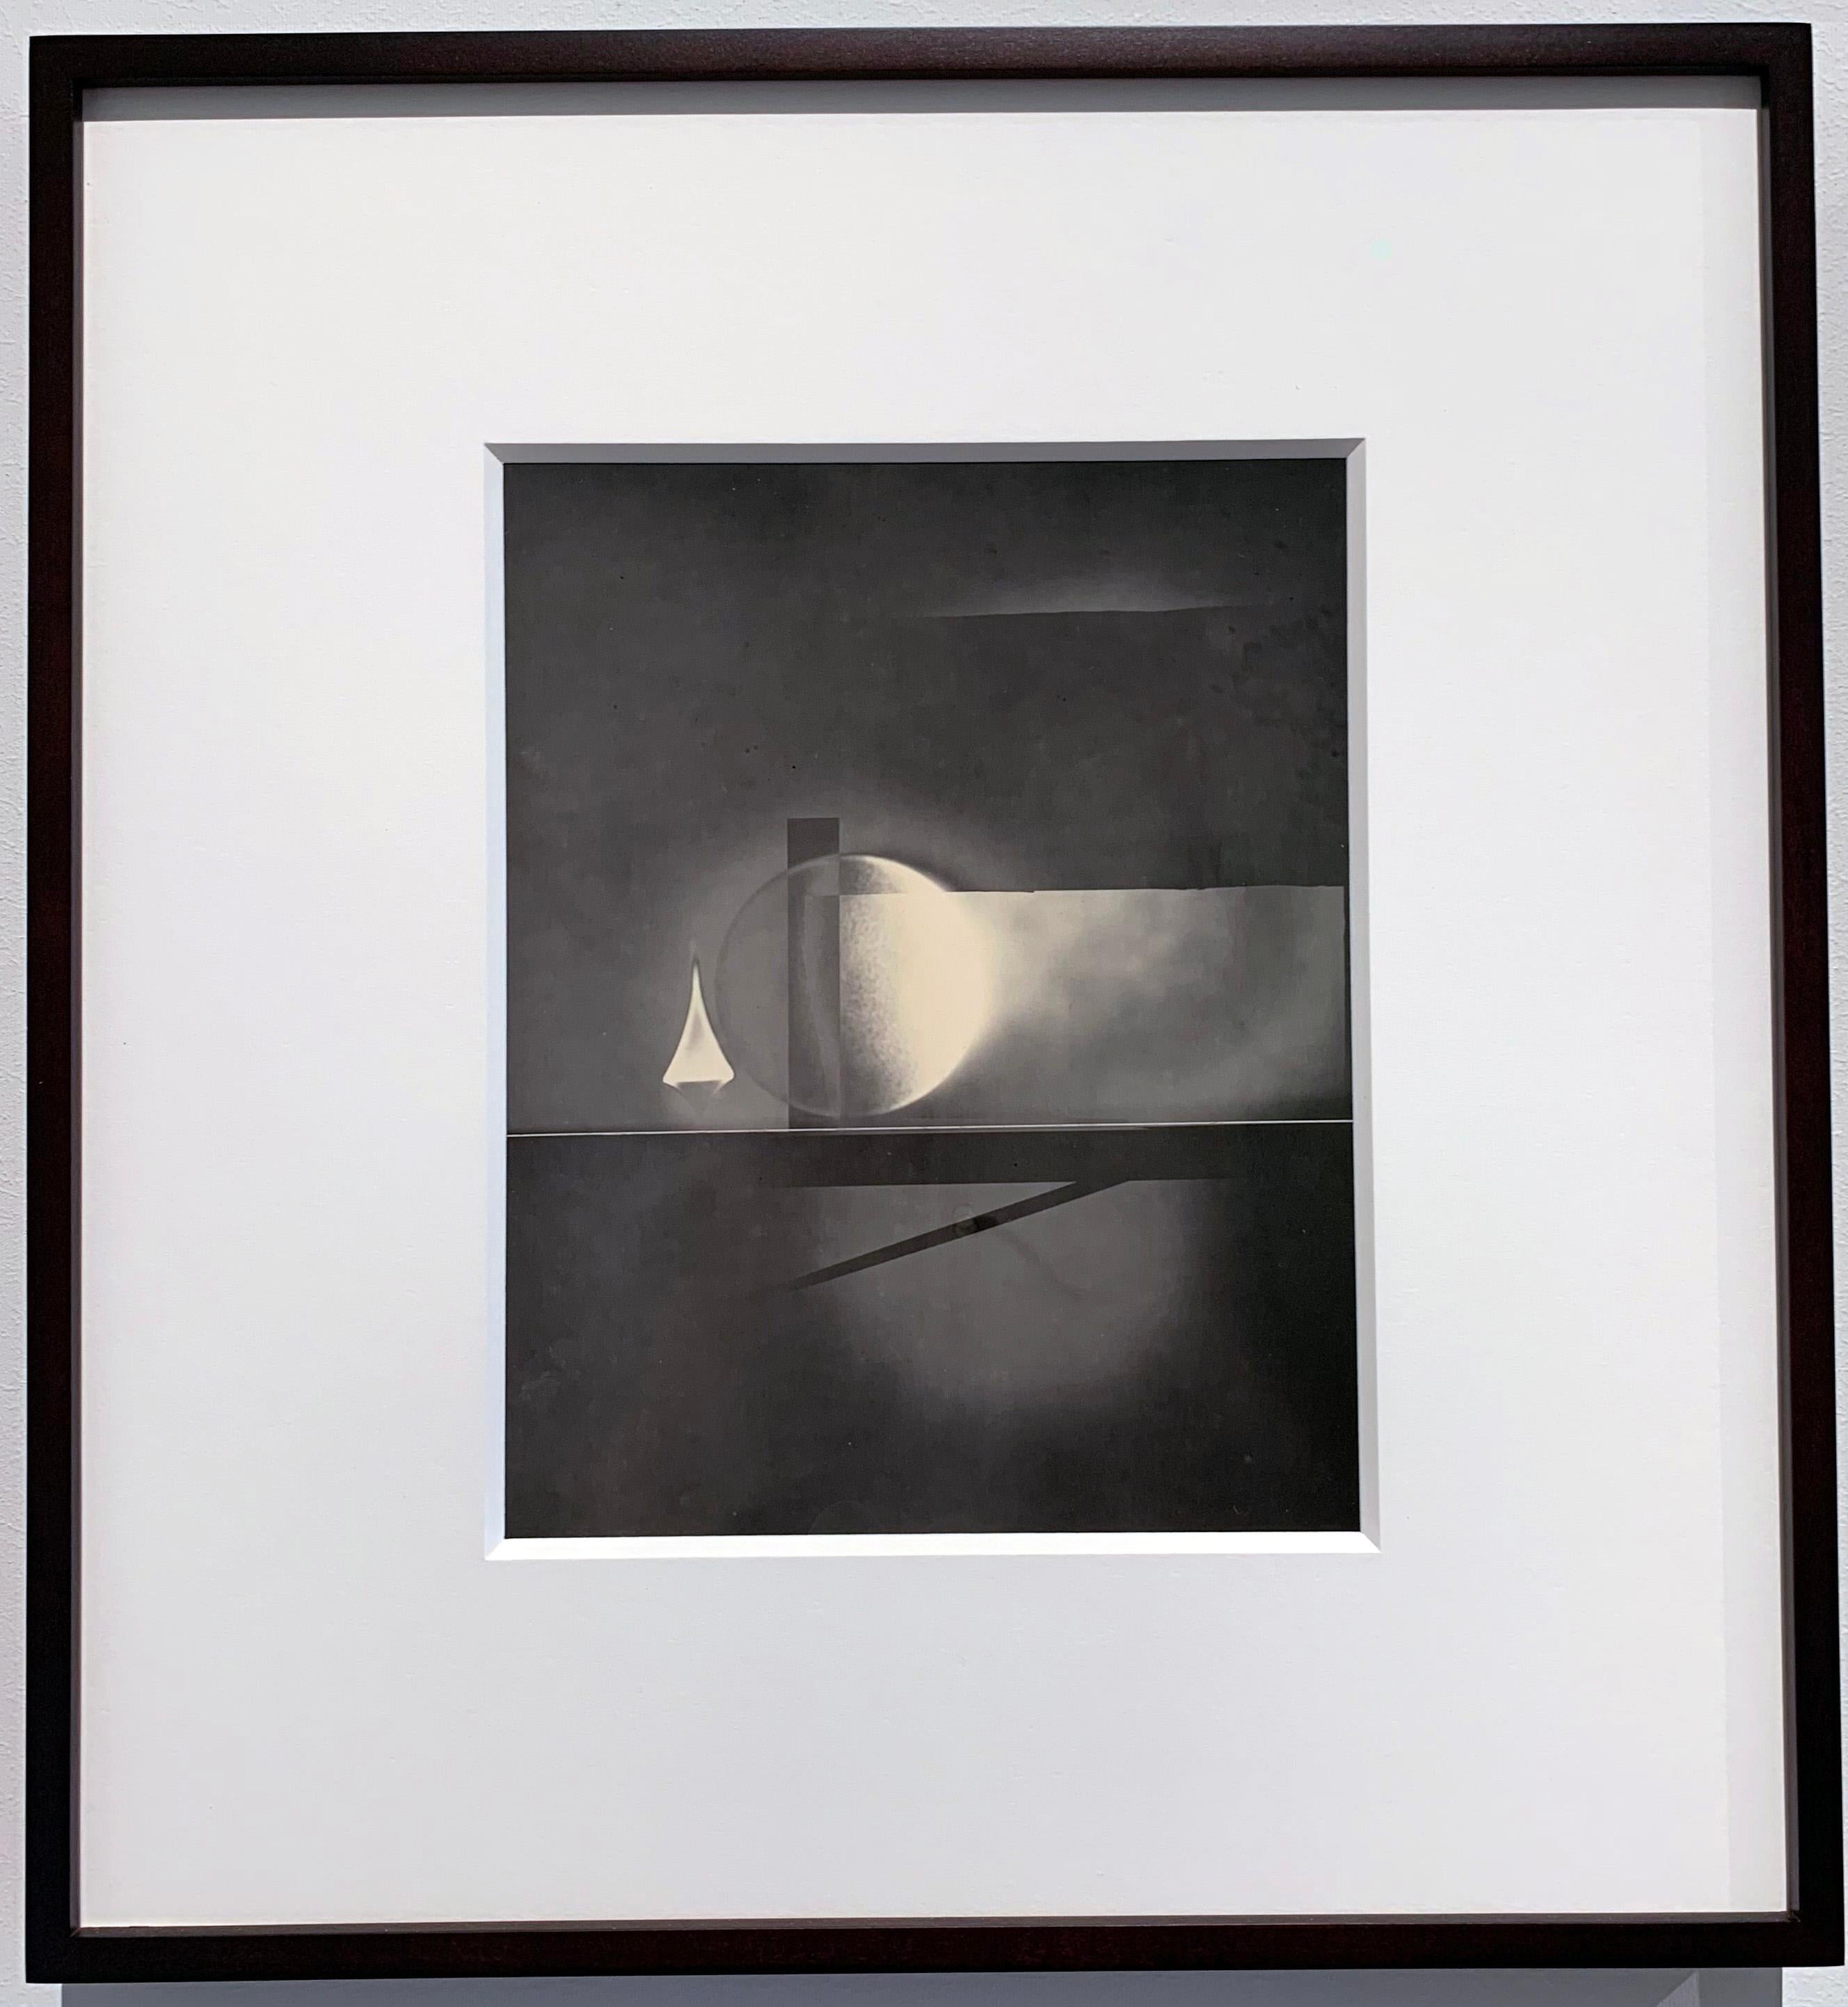 ATO>MIC #10, Einzigartiger Silber-Luminogramm-Druck, Abstrakte Geometrie in warmen Tönen – Photograph von Michael G Jackson